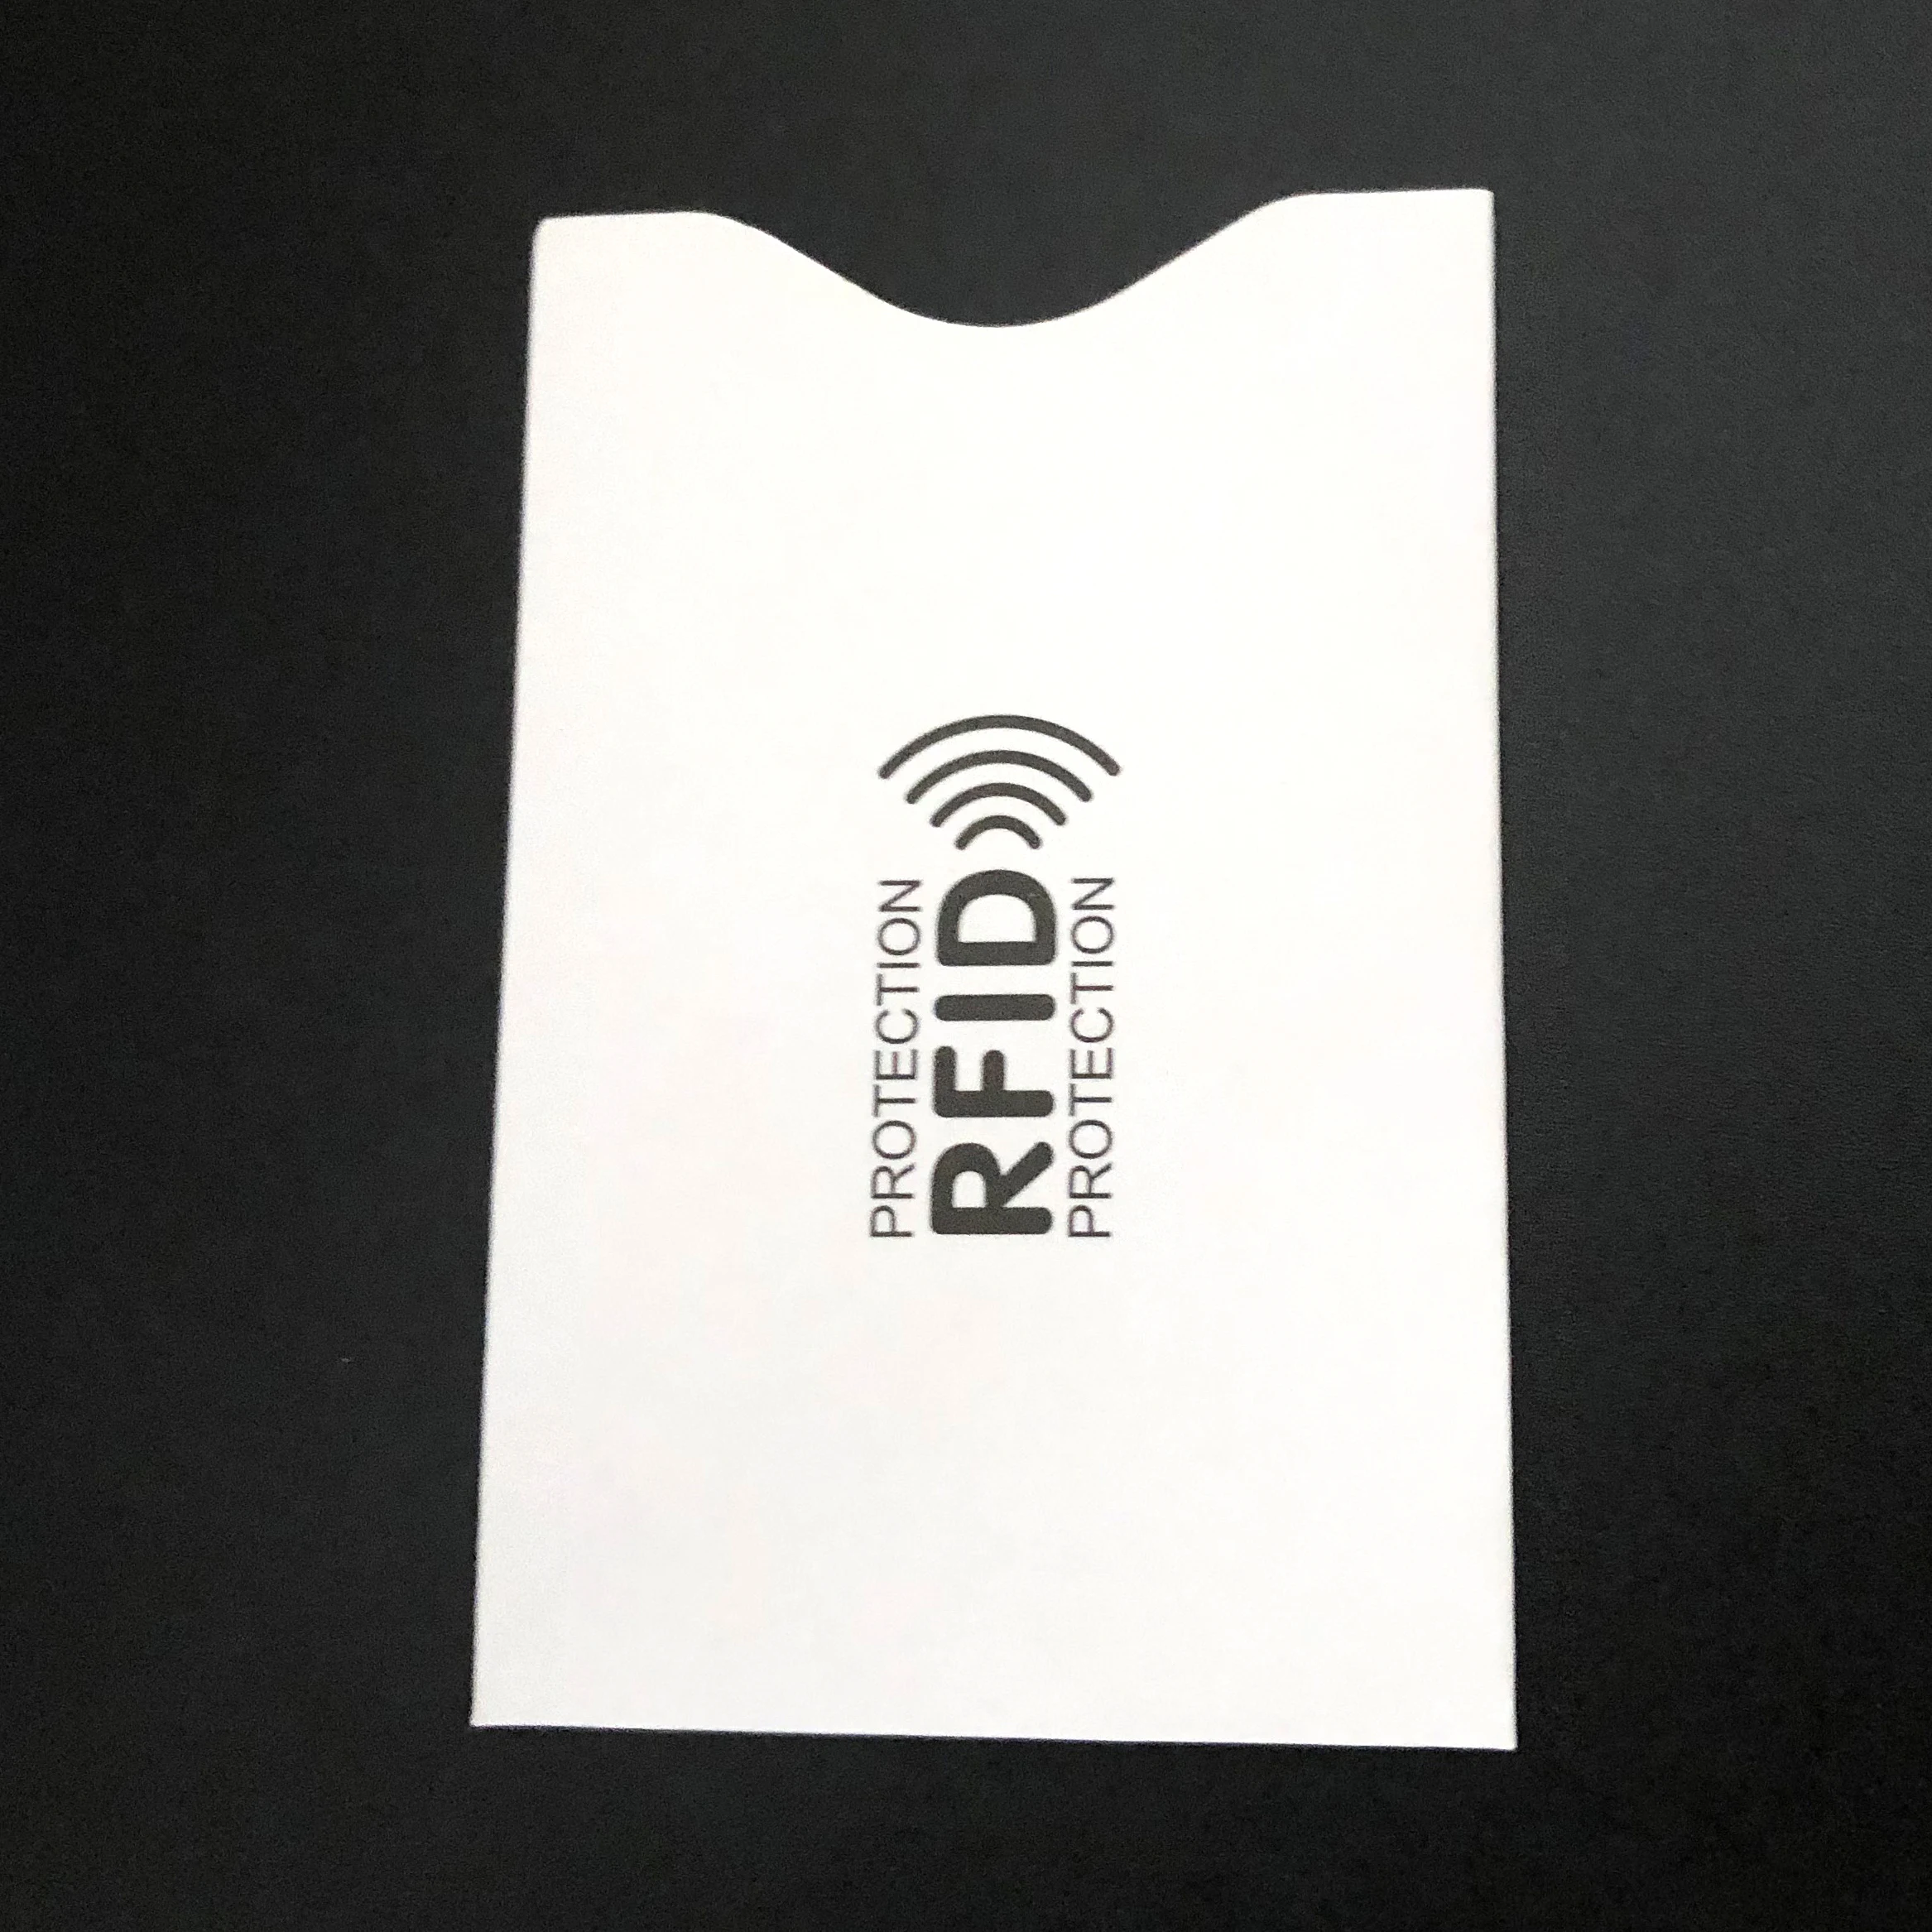 Защитный чехол для банковских карт с RFID-защитой от кражи 5 шт. | Багаж и сумки